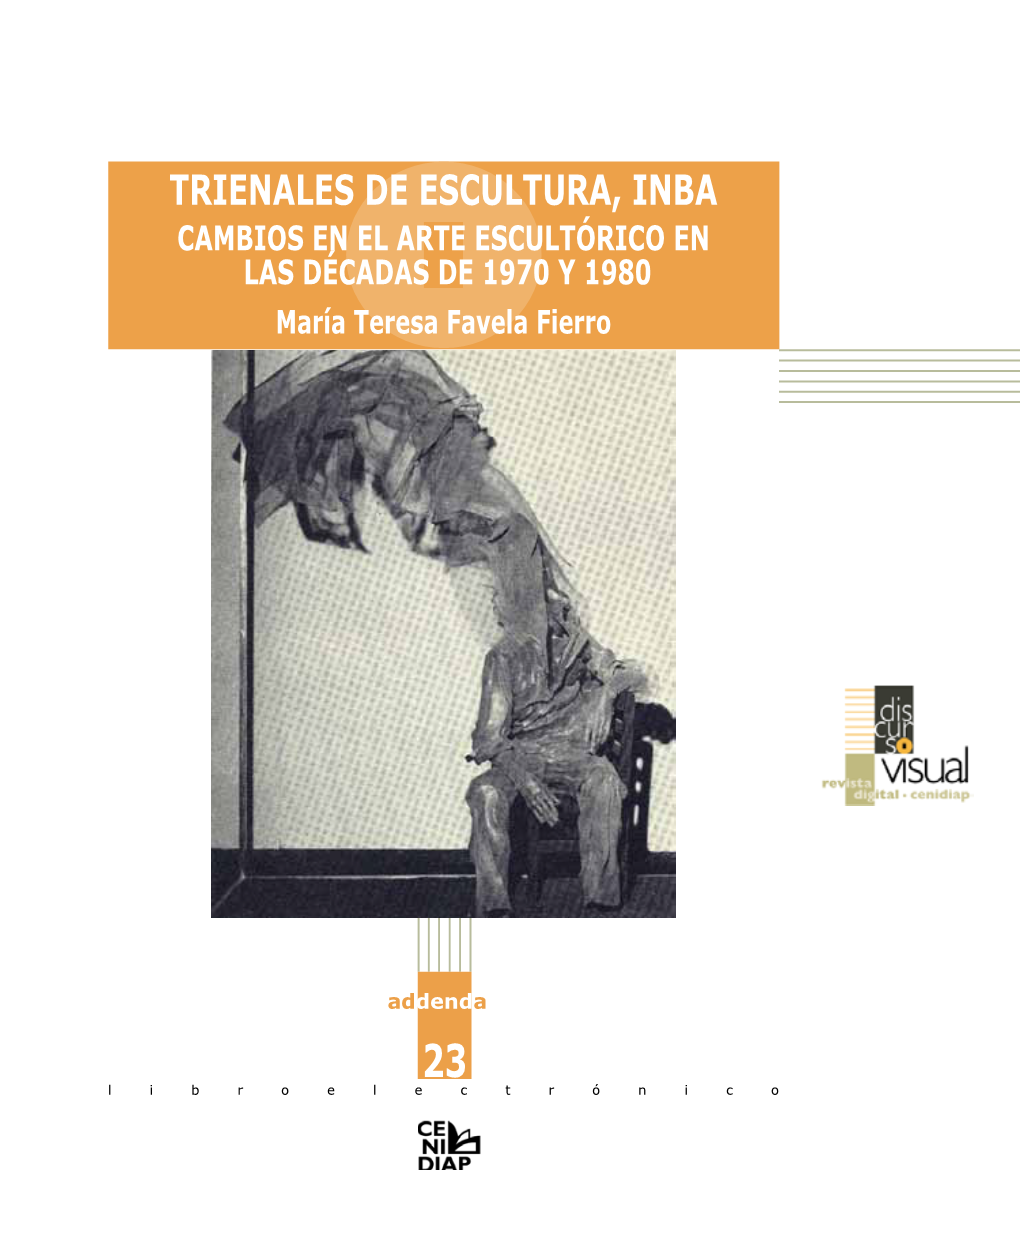 Trienales De Escultura, INBA Cambios En El Arte Escultórico EN Las Décadas De 1970 Y 1980 María Teresa Favela Fierro